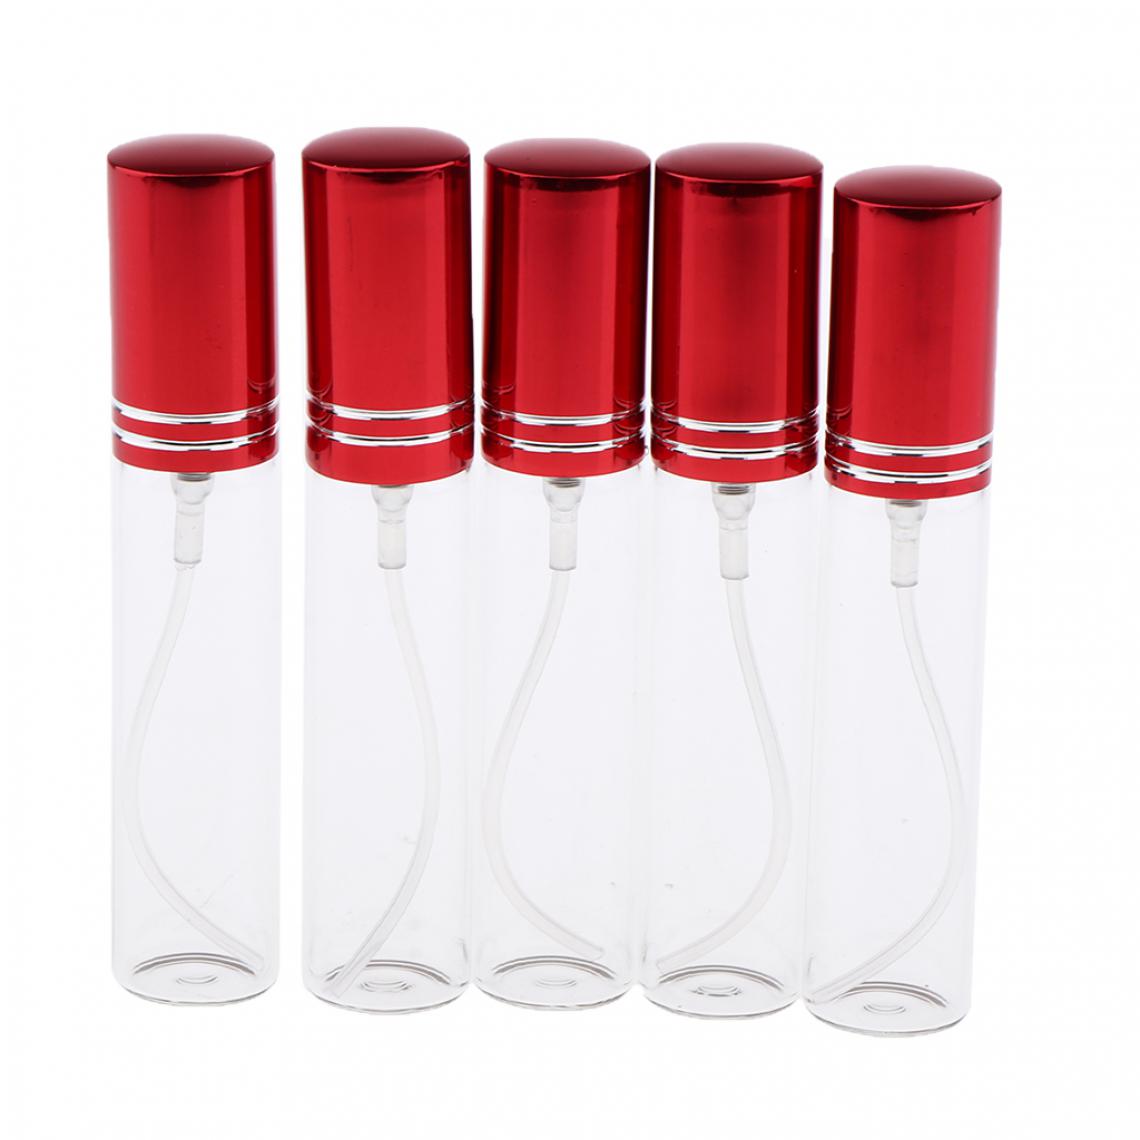 marque generique - 5 flacons de vaporisateur de parfum en verre rechargeable vide de 10 ml avec flacon rouge - Maquillage et coiffure